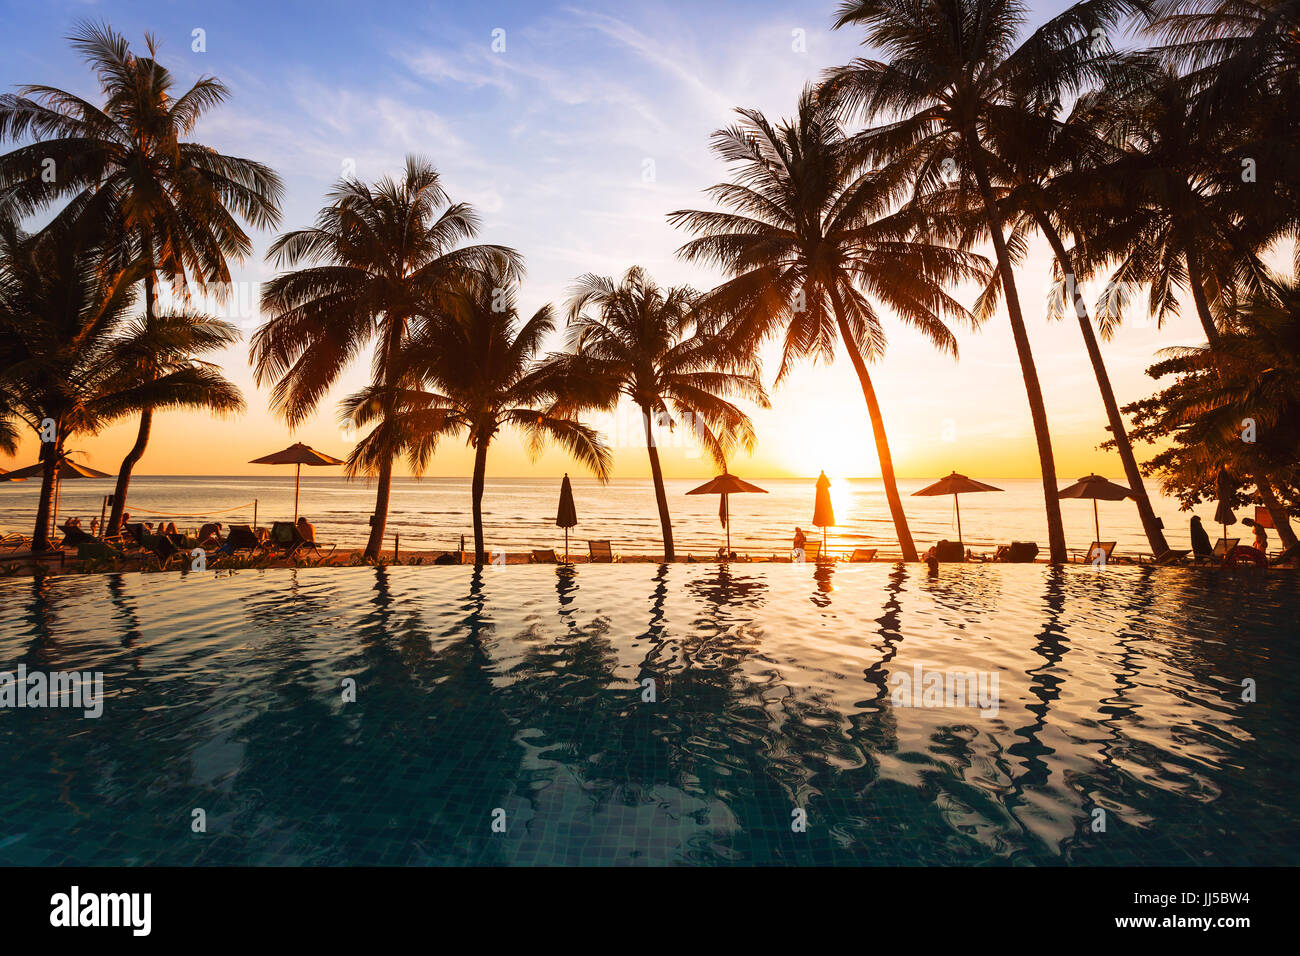 Magnifique coucher de soleil sur la plage, vacances, reflet de silhouettes de palmiers dans la piscine de l'hôtel Banque D'Images